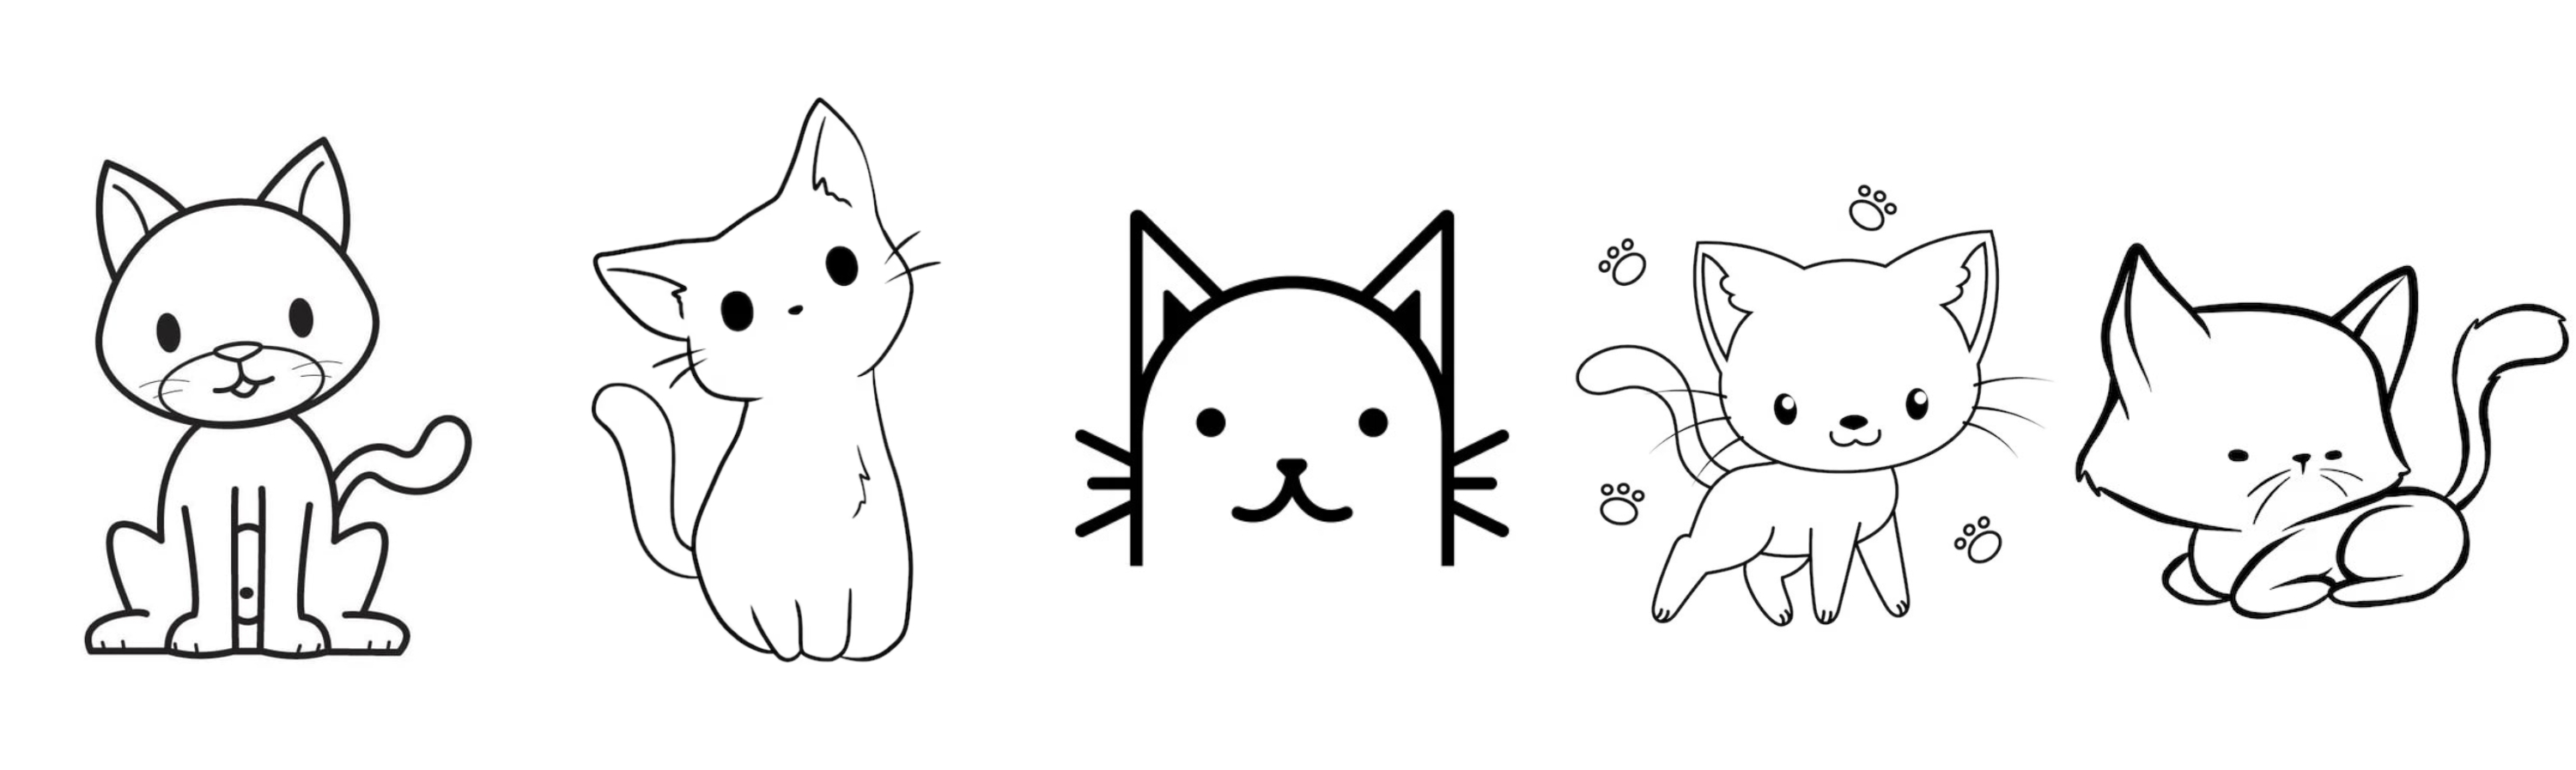 10 ideas de dibujos fáciles para hacer de gatos